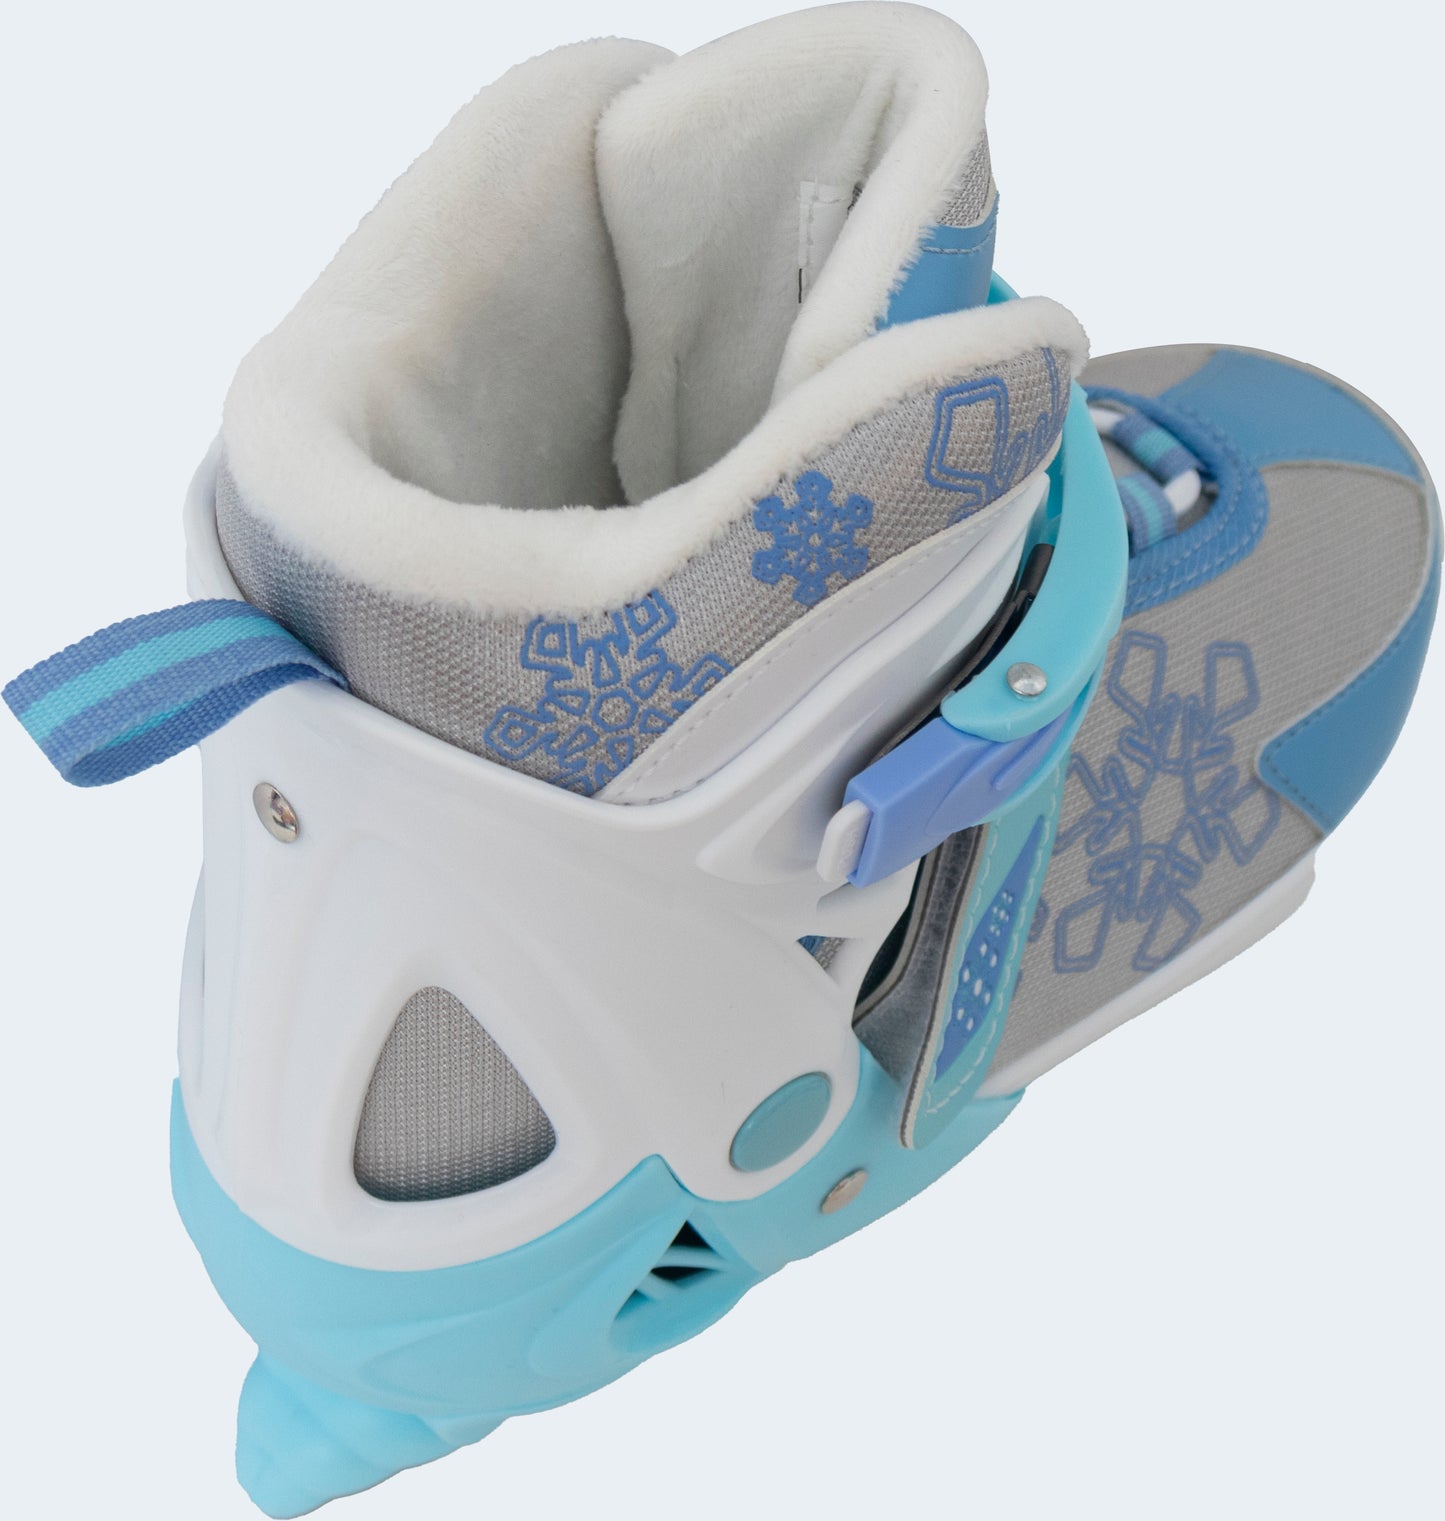 Nattork Adjustable Ice Skates - Blue Snow Flake